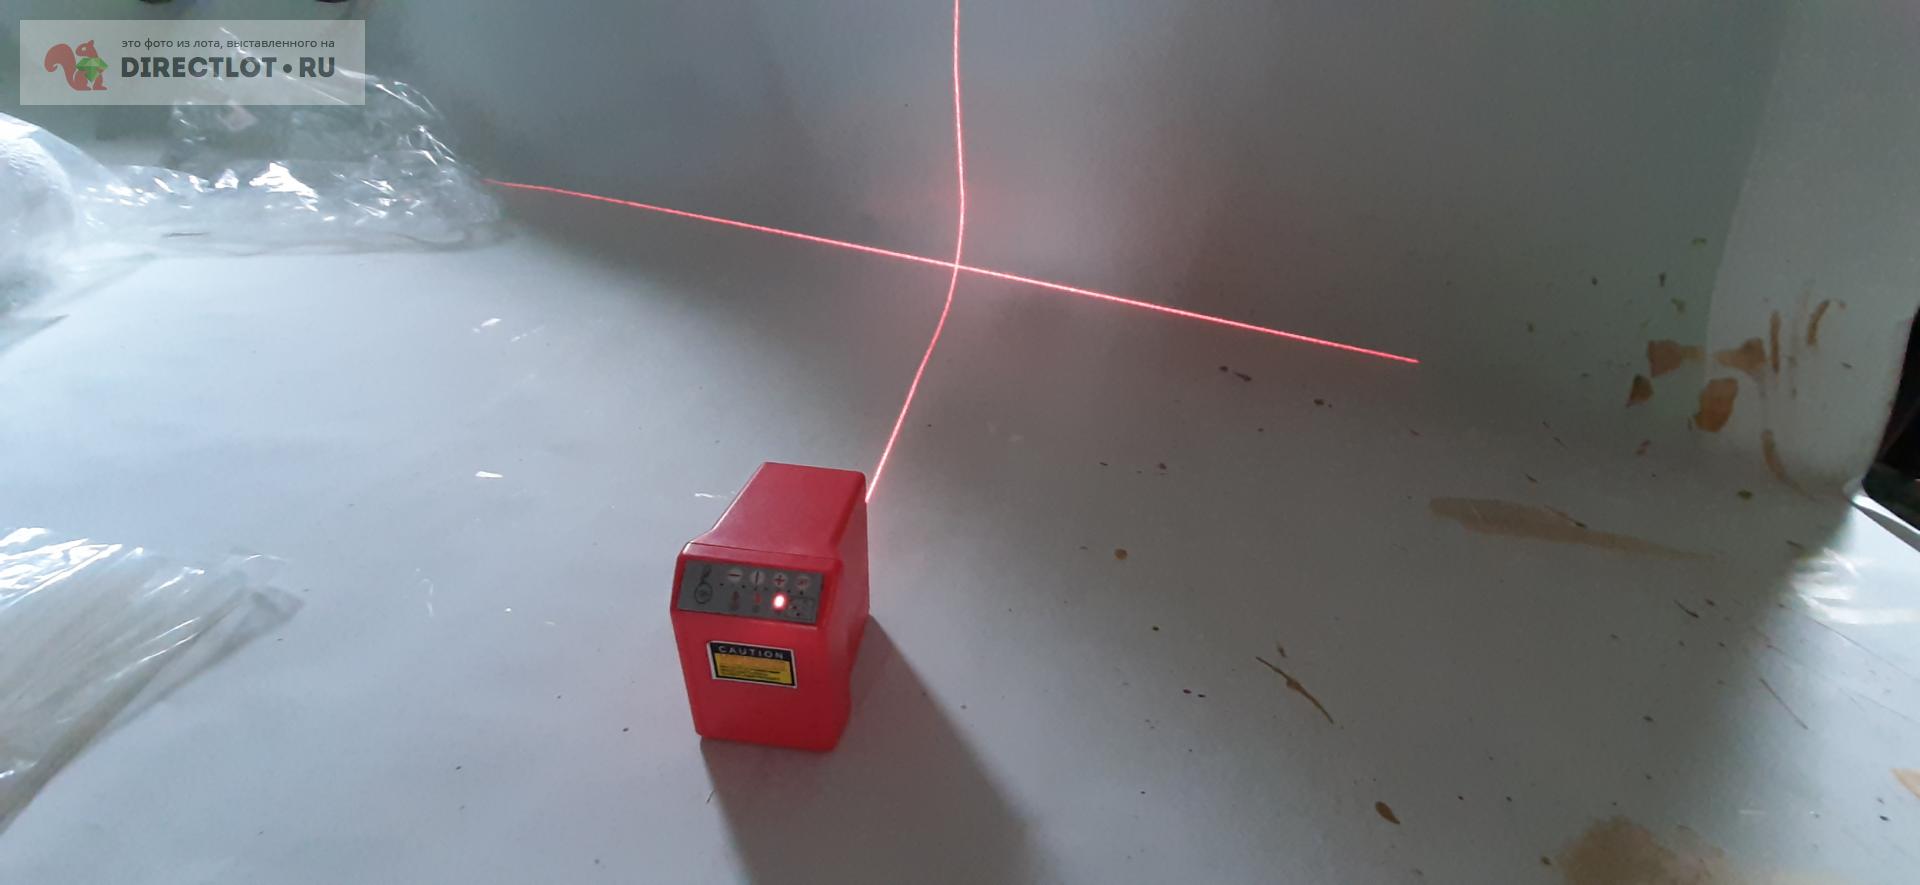 Лазерный уровень, самоустанавливающийся  в Орле цена 1400 Р на .